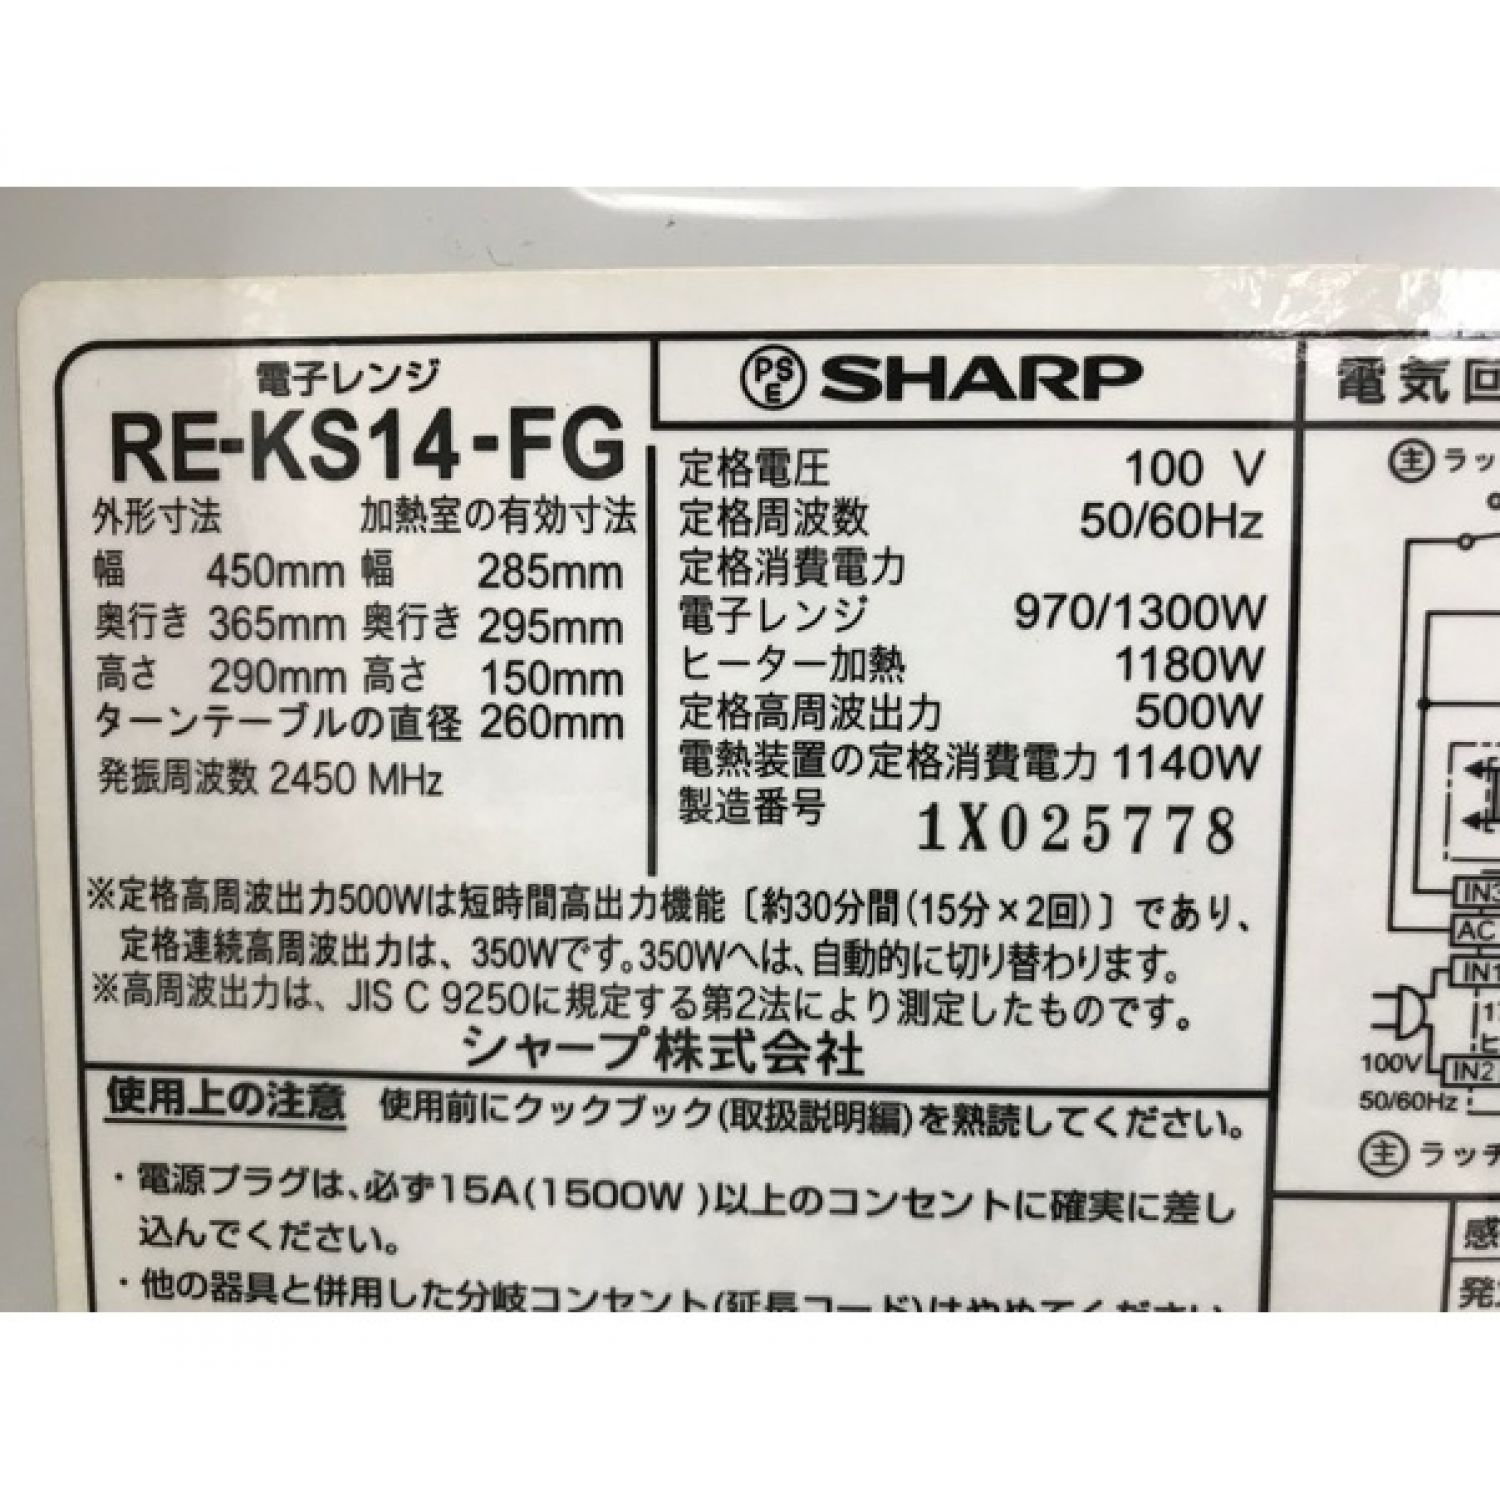 SHARP RE-KS14-FG